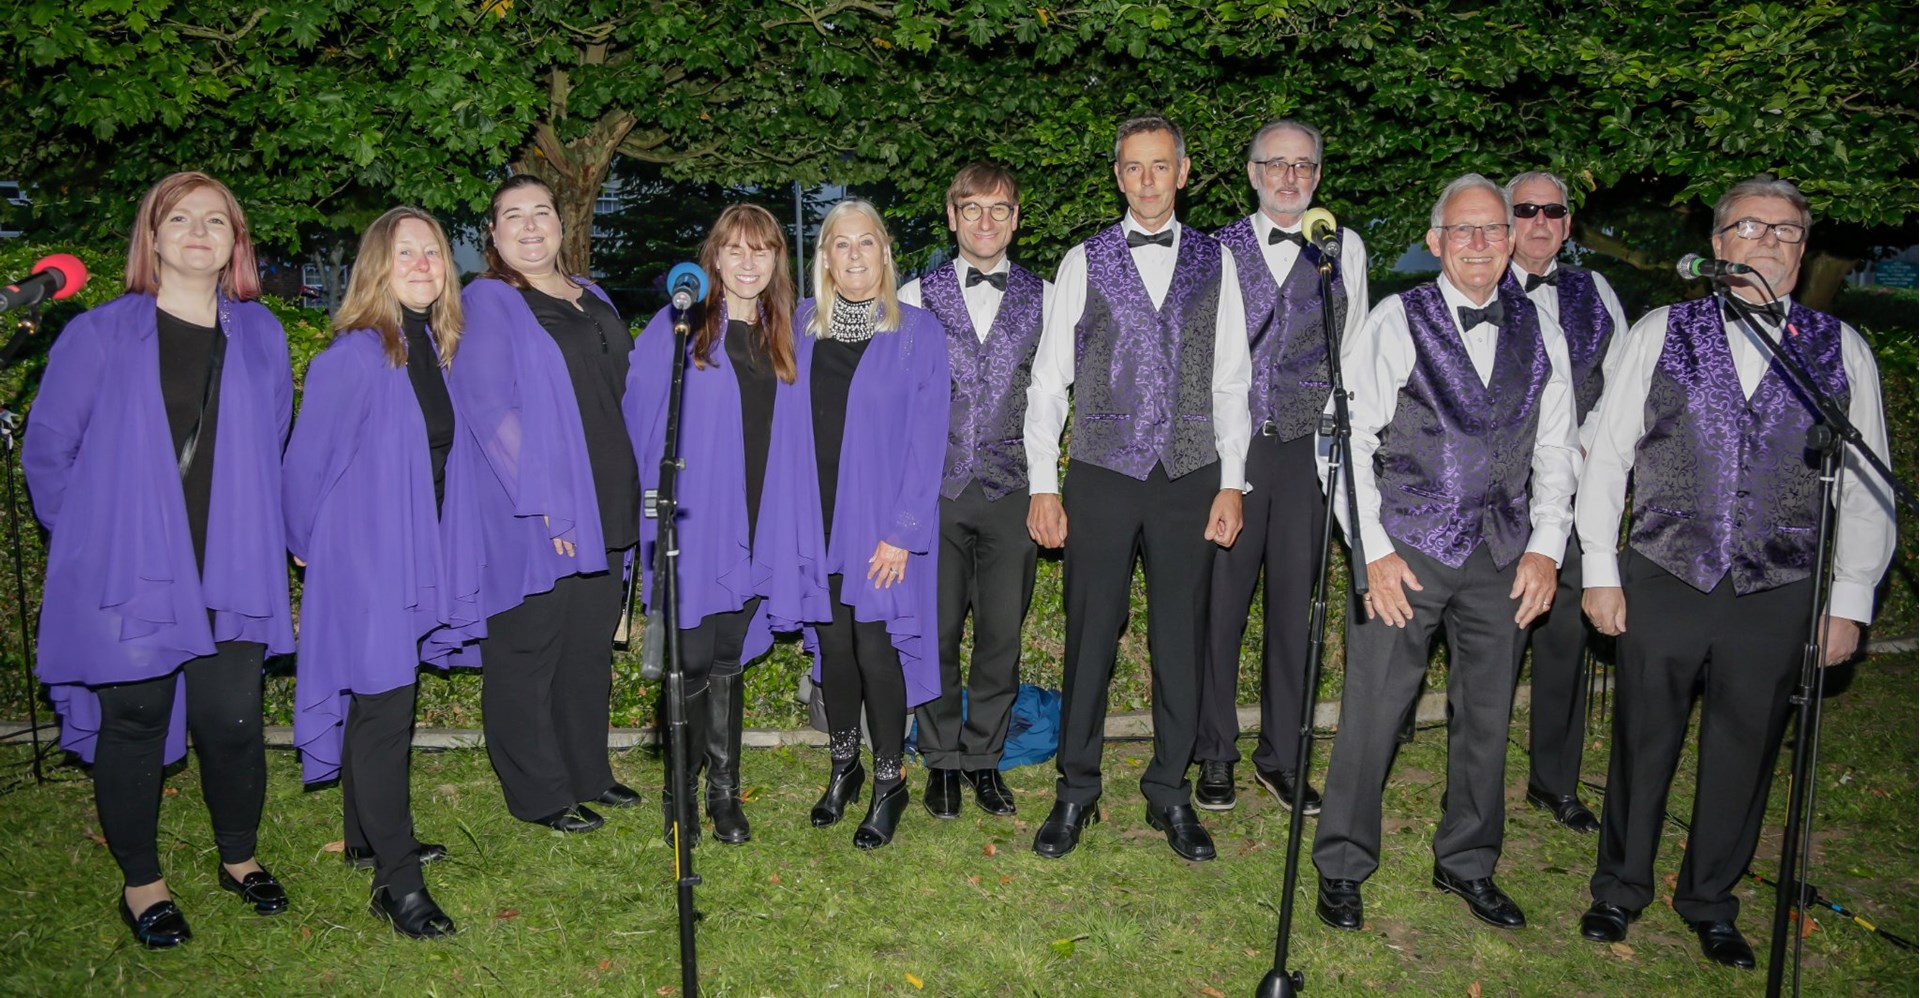 The Maypole Minstrels Choir